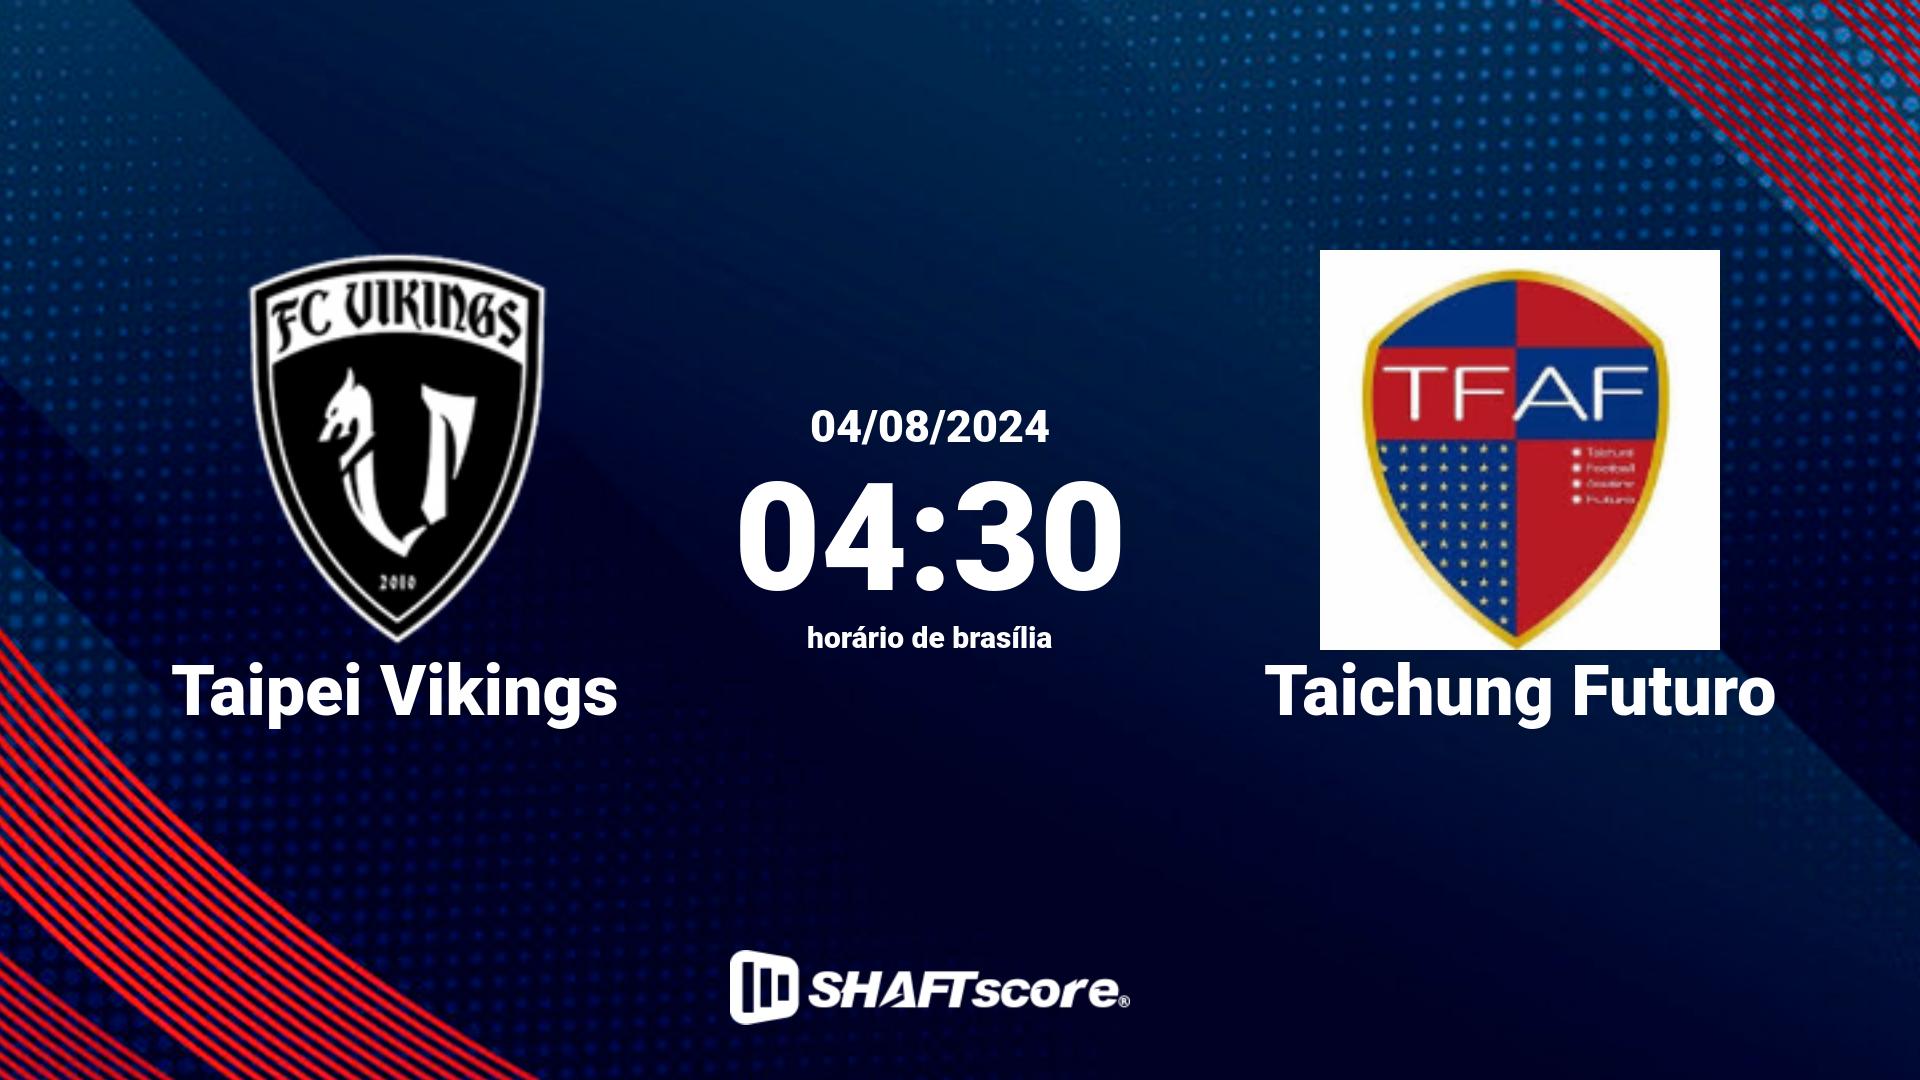 Estatísticas do jogo Taipei Vikings vs Taichung Futuro 04.08 04:30